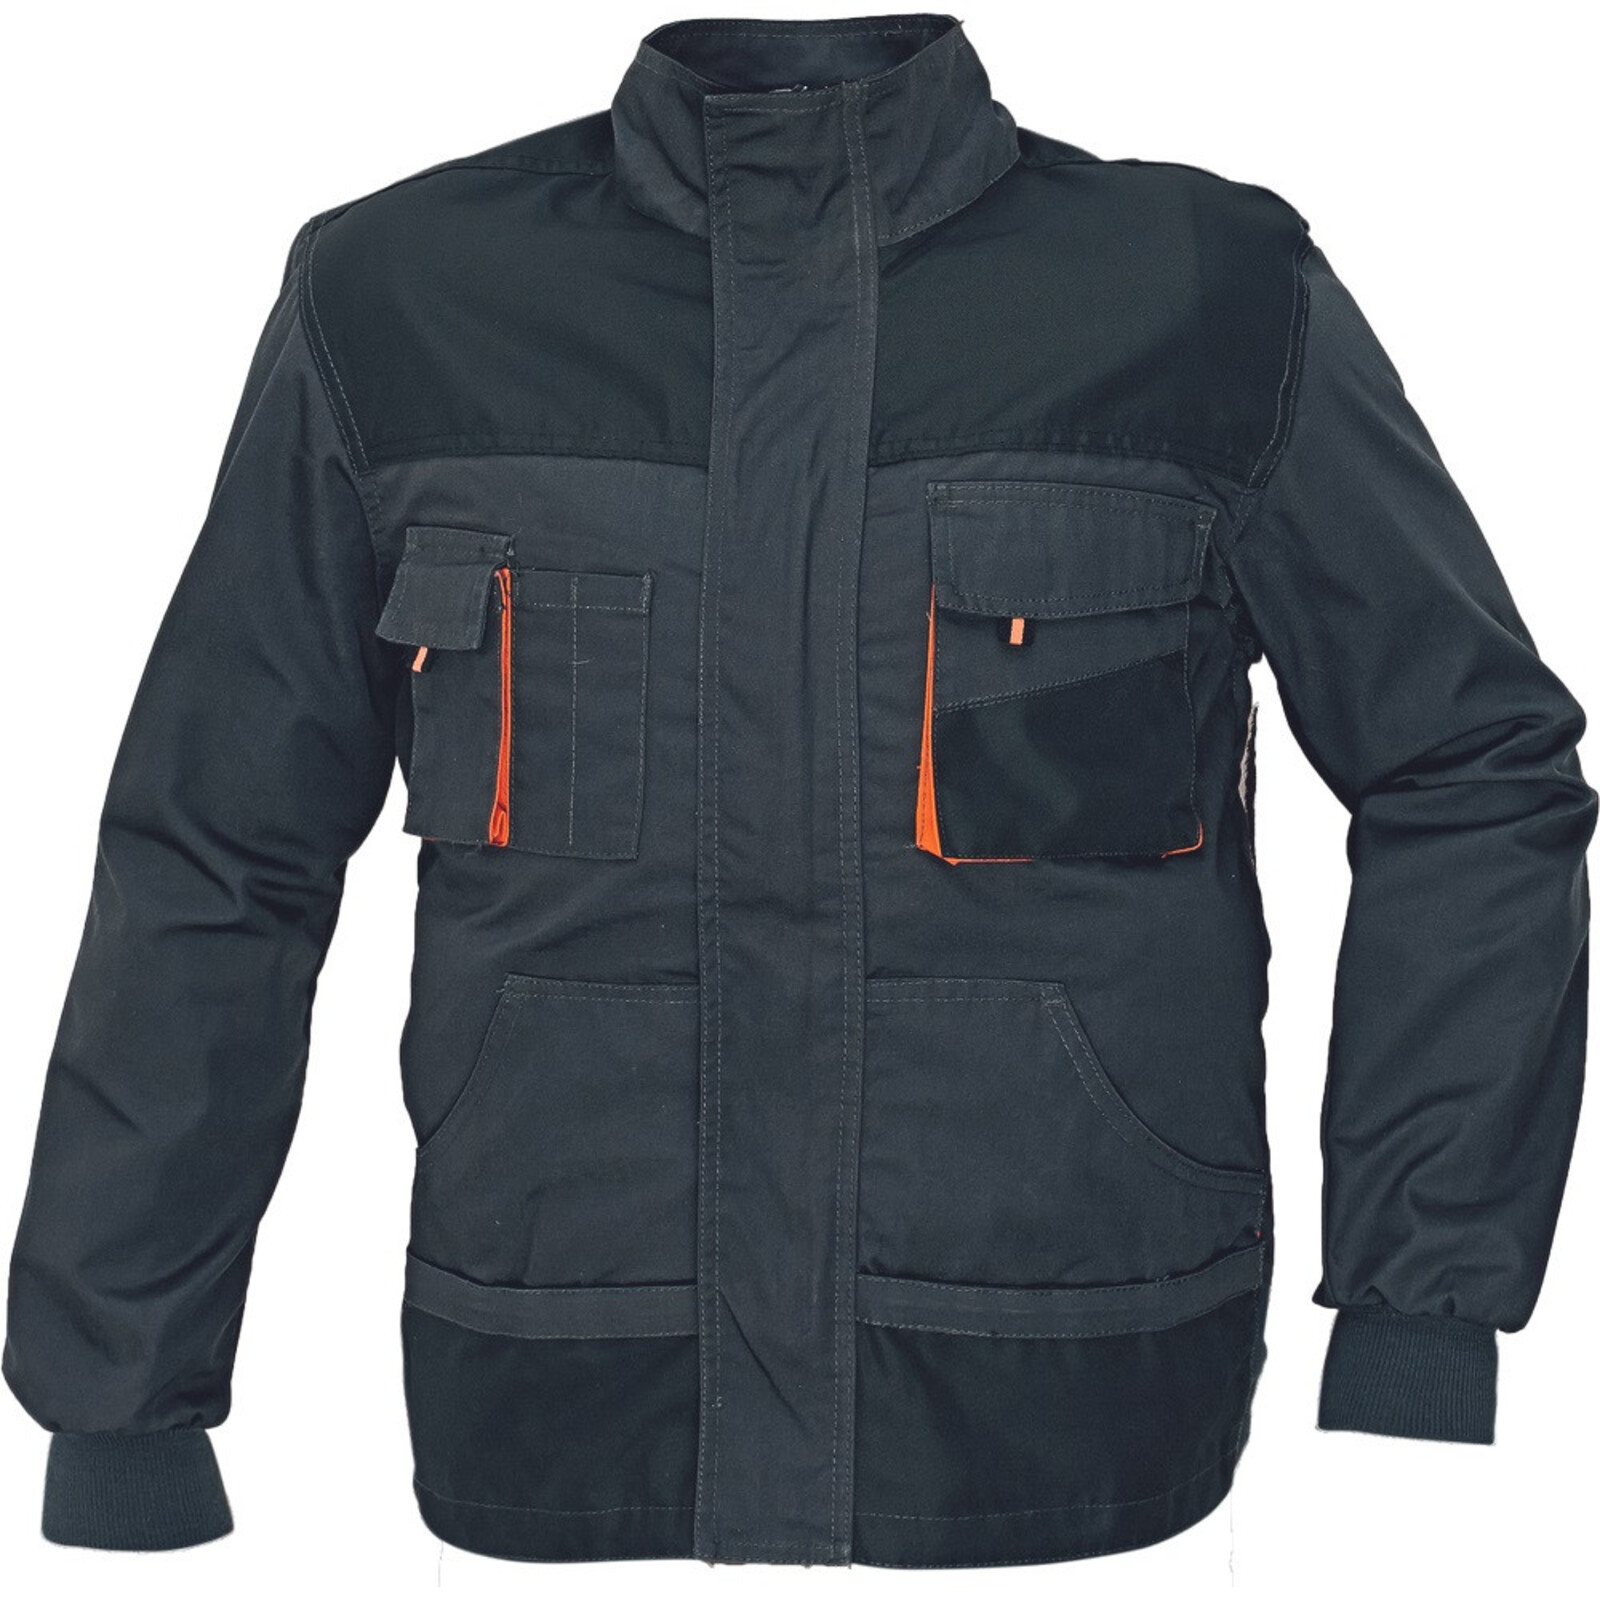 Odolná montérková bunda Emerton pánska - veľkosť: 46, farba: čierna/oranžová